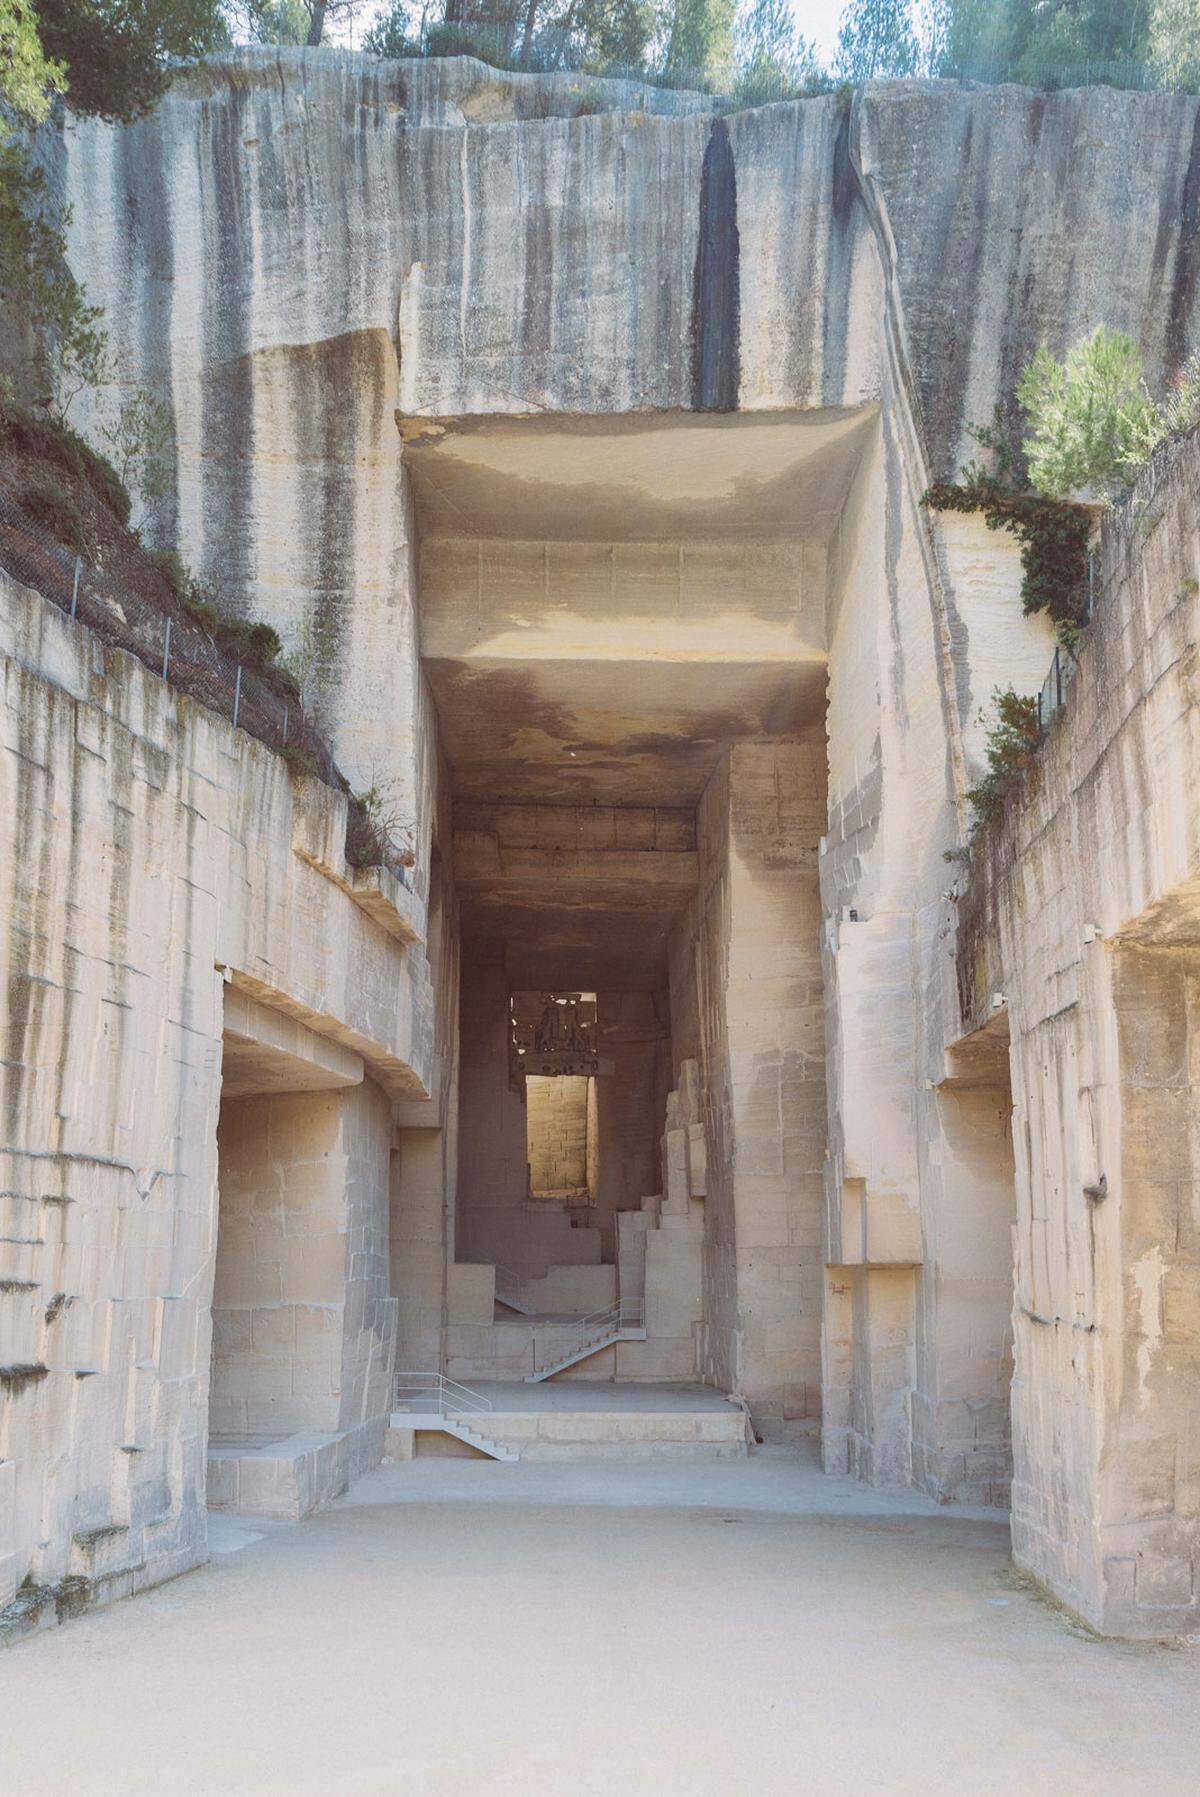 Die Kalksteinbrüche von Les Baux-de-Provence liegen meistens eher Touristen am Herzen. Jetzt fand auch Karl Lagerfelds Nachfolgerin Virginie Viard Gefallen an der Szenerie.